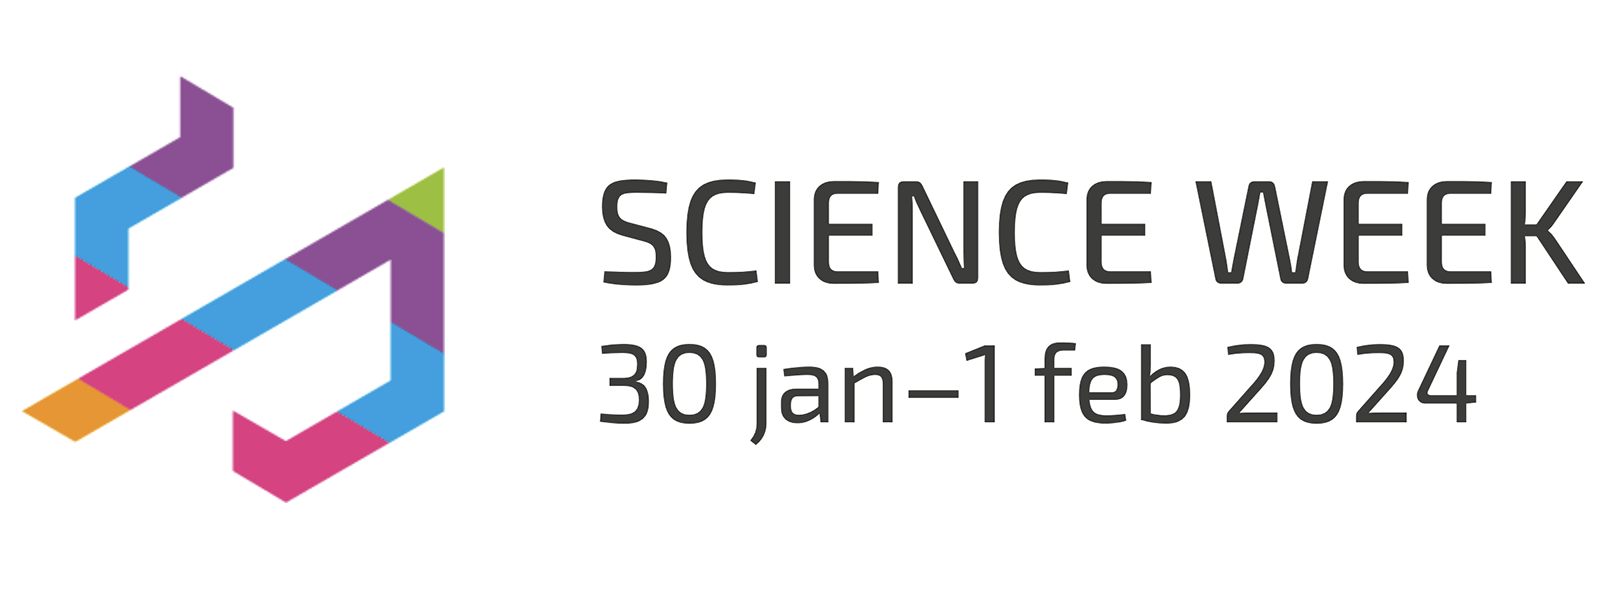 Science Week logo